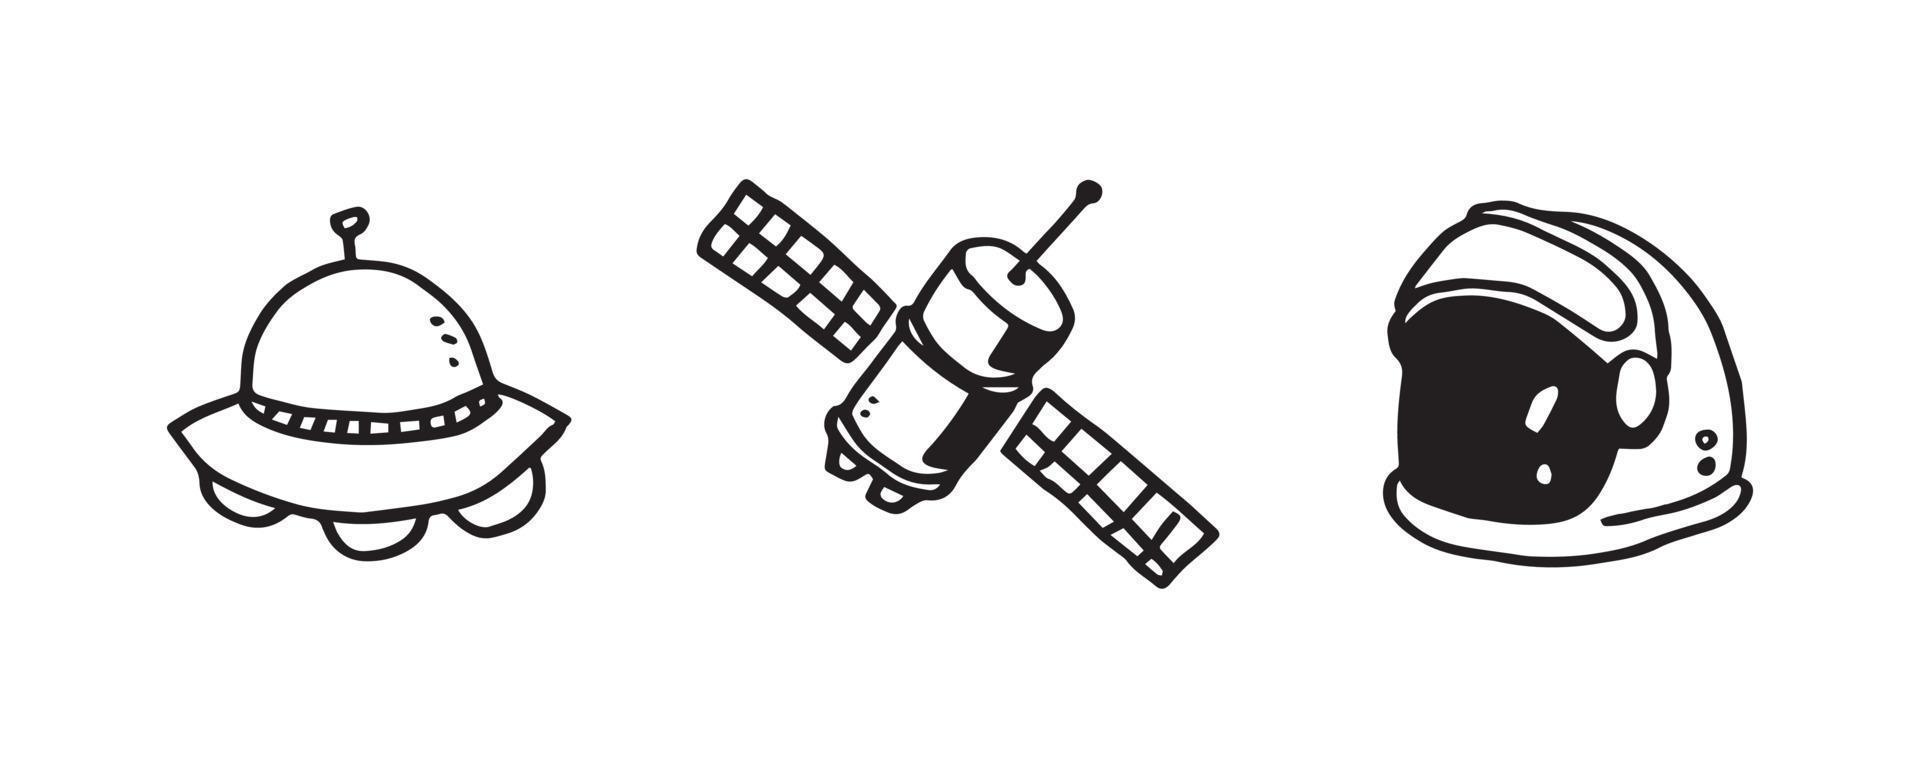 colección de objetos espaciales incompletos aislados sobre fondo blanco. diseño de ilustración de ovnis, satélites y astronautas dibujados a mano vector